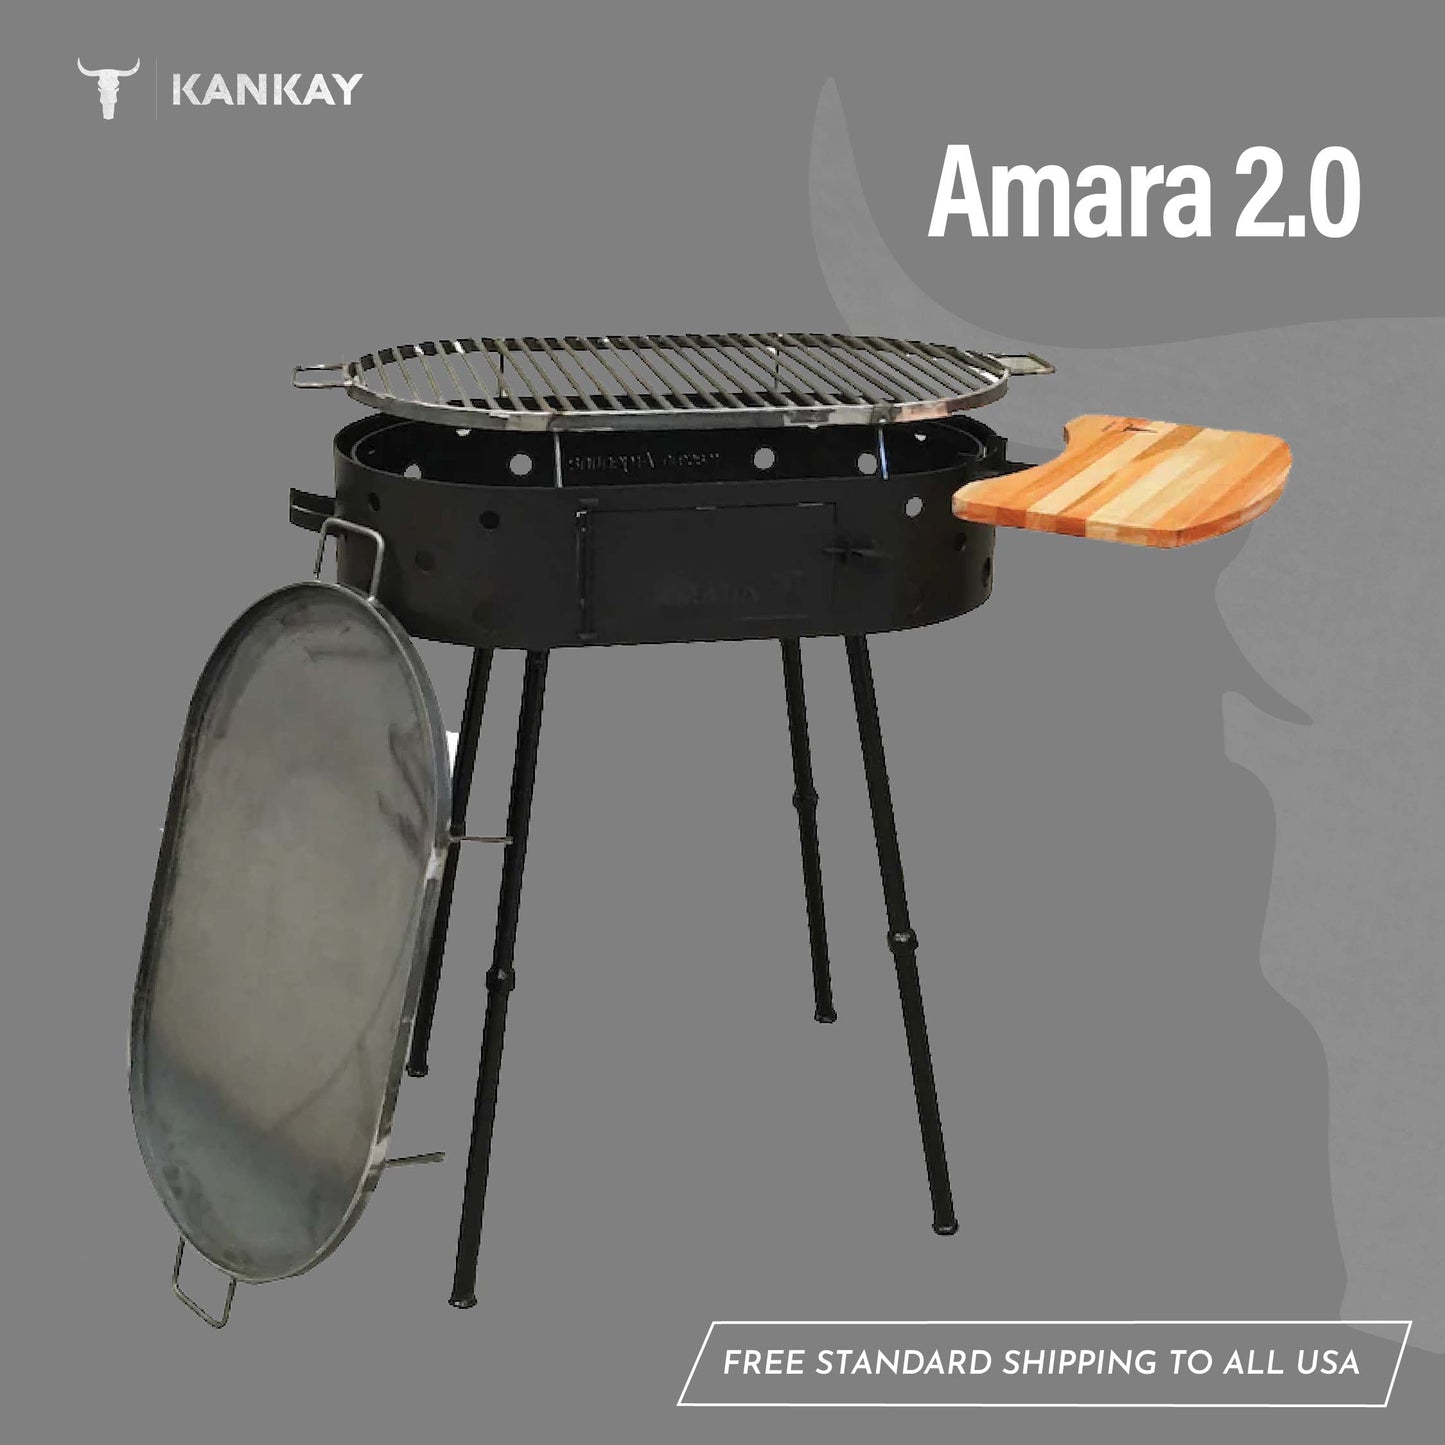 Amara 2.0